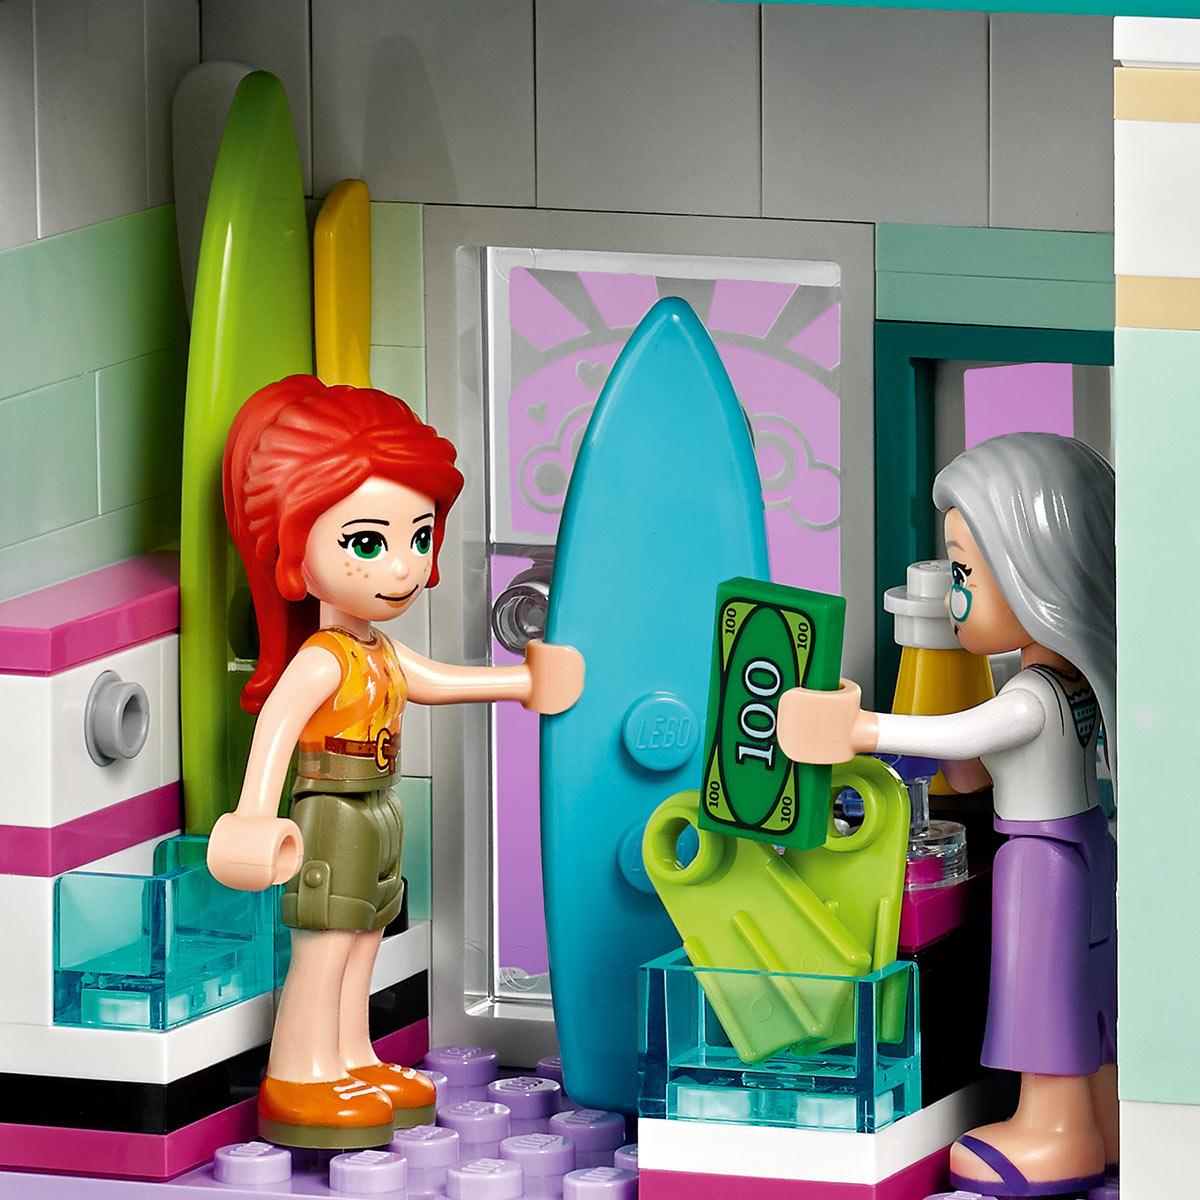 Slike LEGO Kocke Surferska plaža 41693